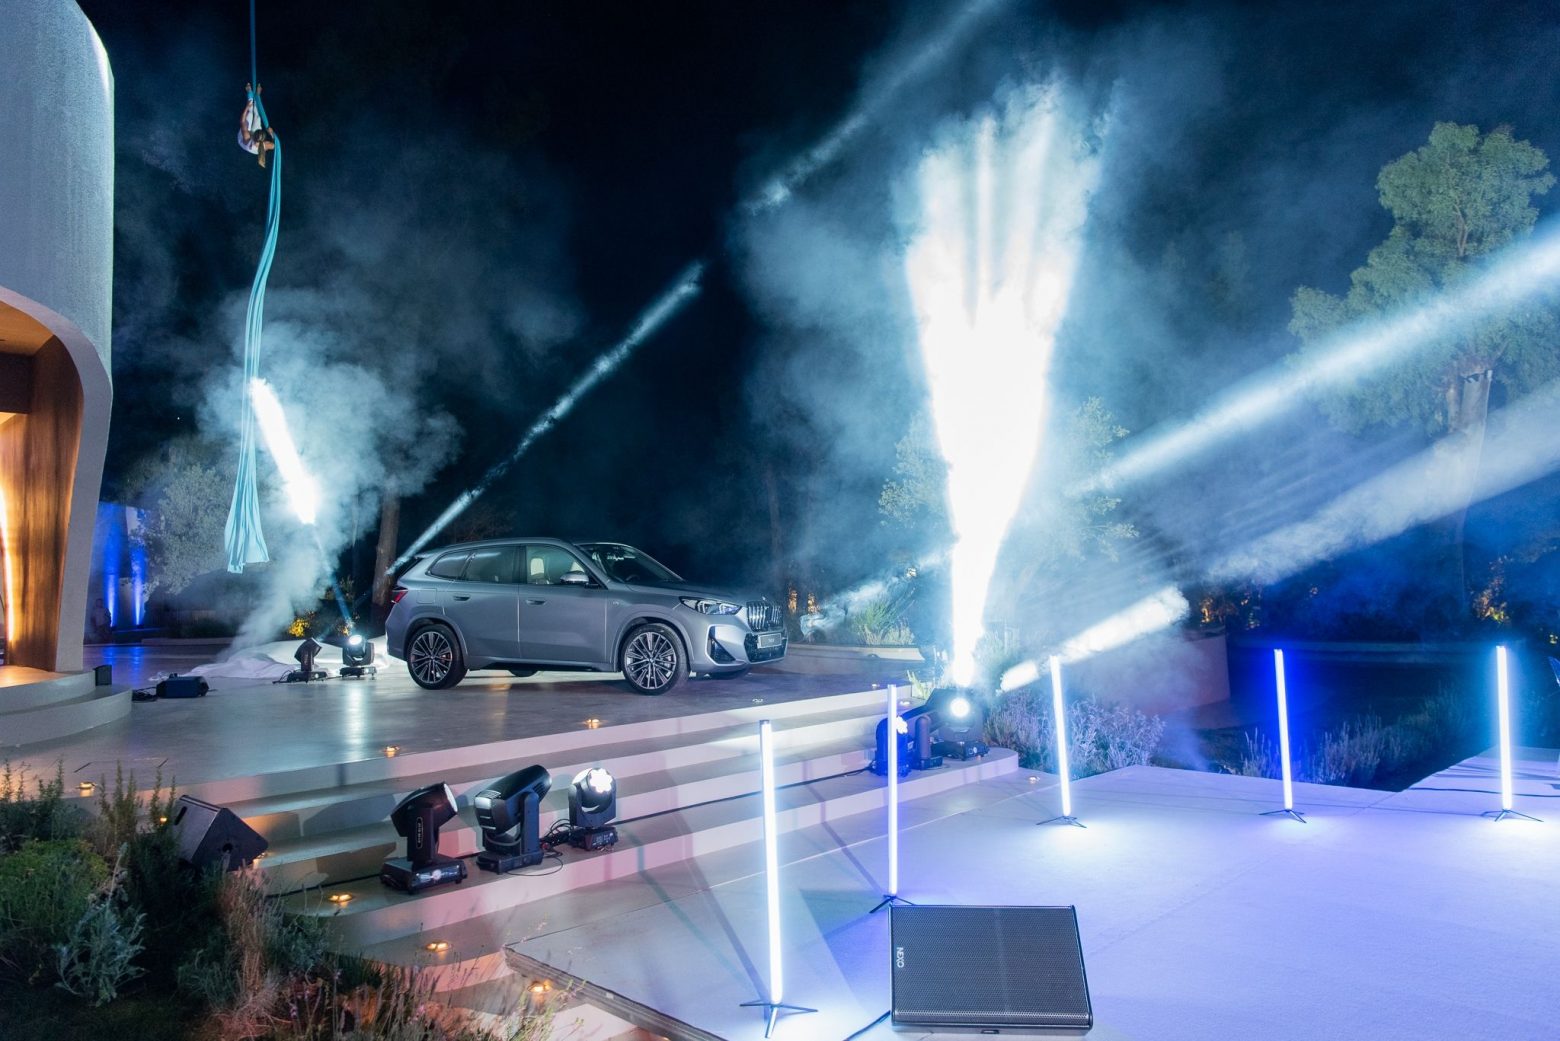 Η νέα BMW X1 παρουσιάστηκε για πρώτη φορά στην Αθήνα σε ένα φεστιβάλ γεμάτο εκπλήξεις